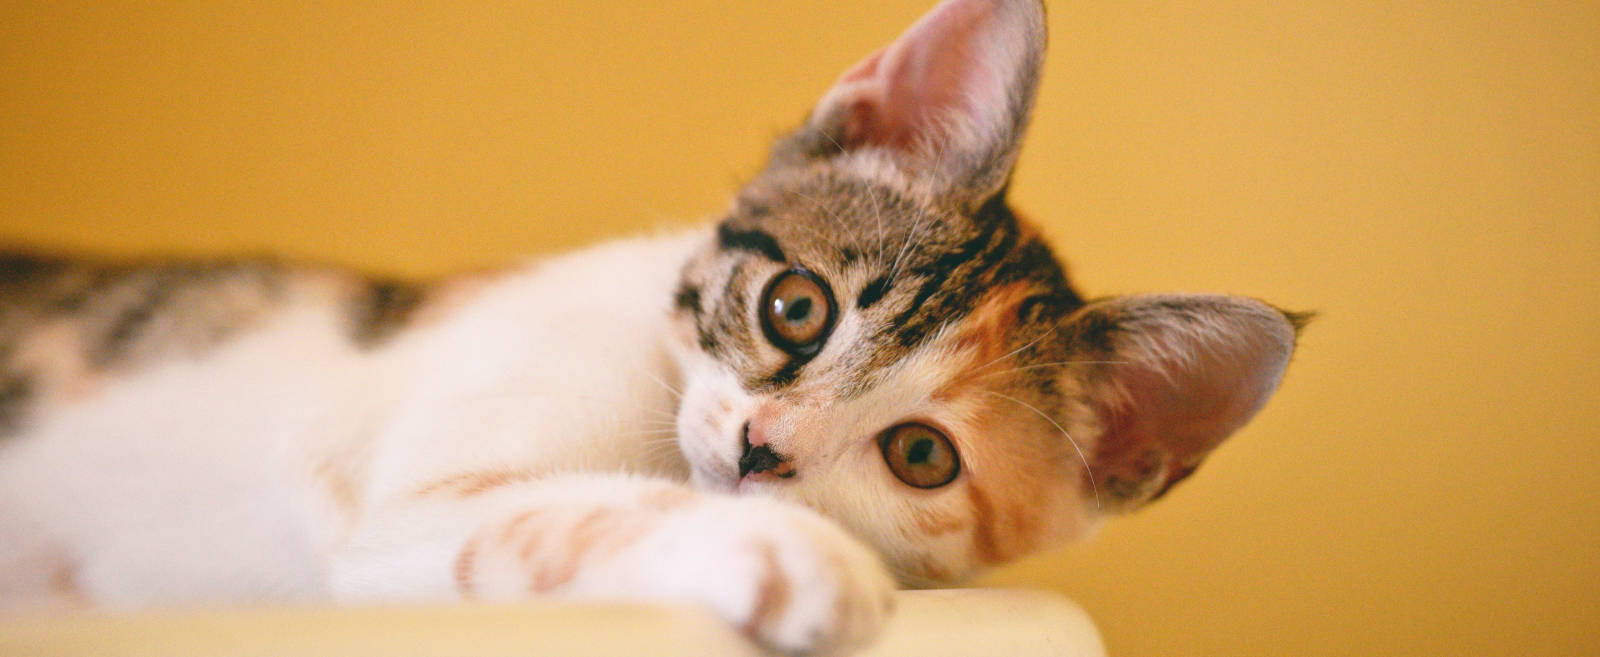 Audition Conseil vous en dit plus sur la communication des chats avec l'être humain